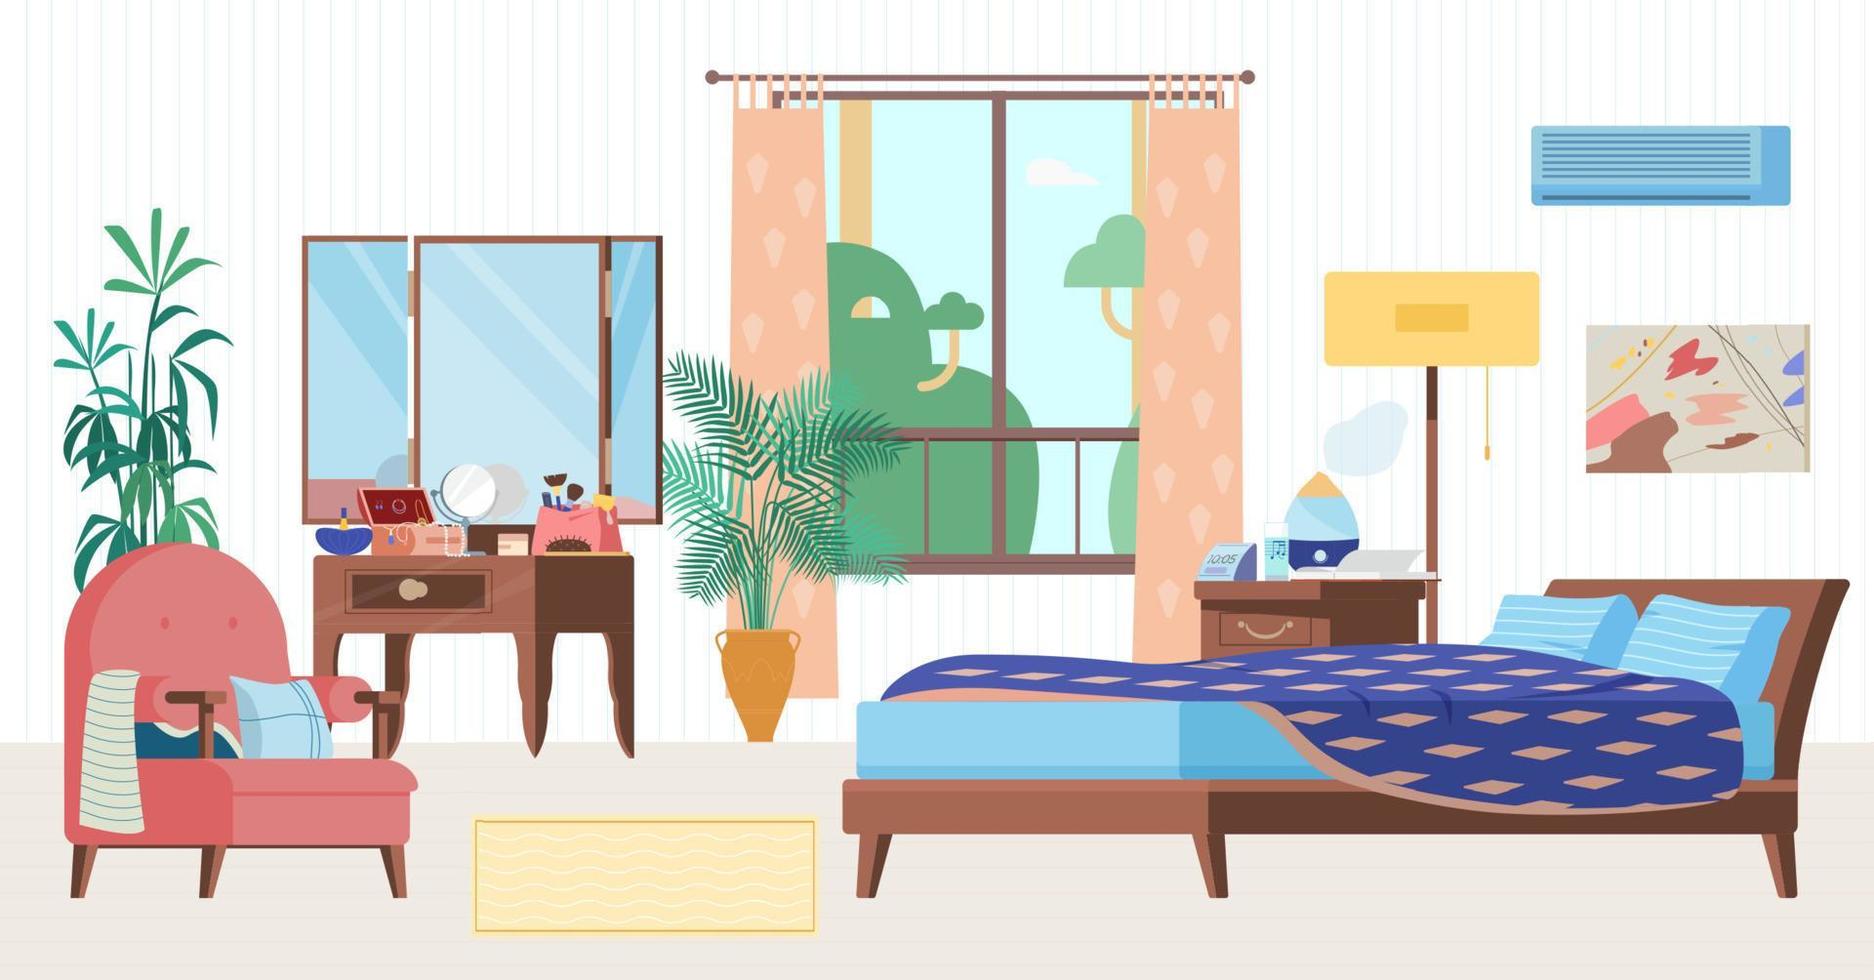 ilustração em vetor plana interior quarto aconchegante. móveis de madeira, cama, poltrona, penteadeira, janela, mesa de cabeceira com umidificador, relógio, plantas.